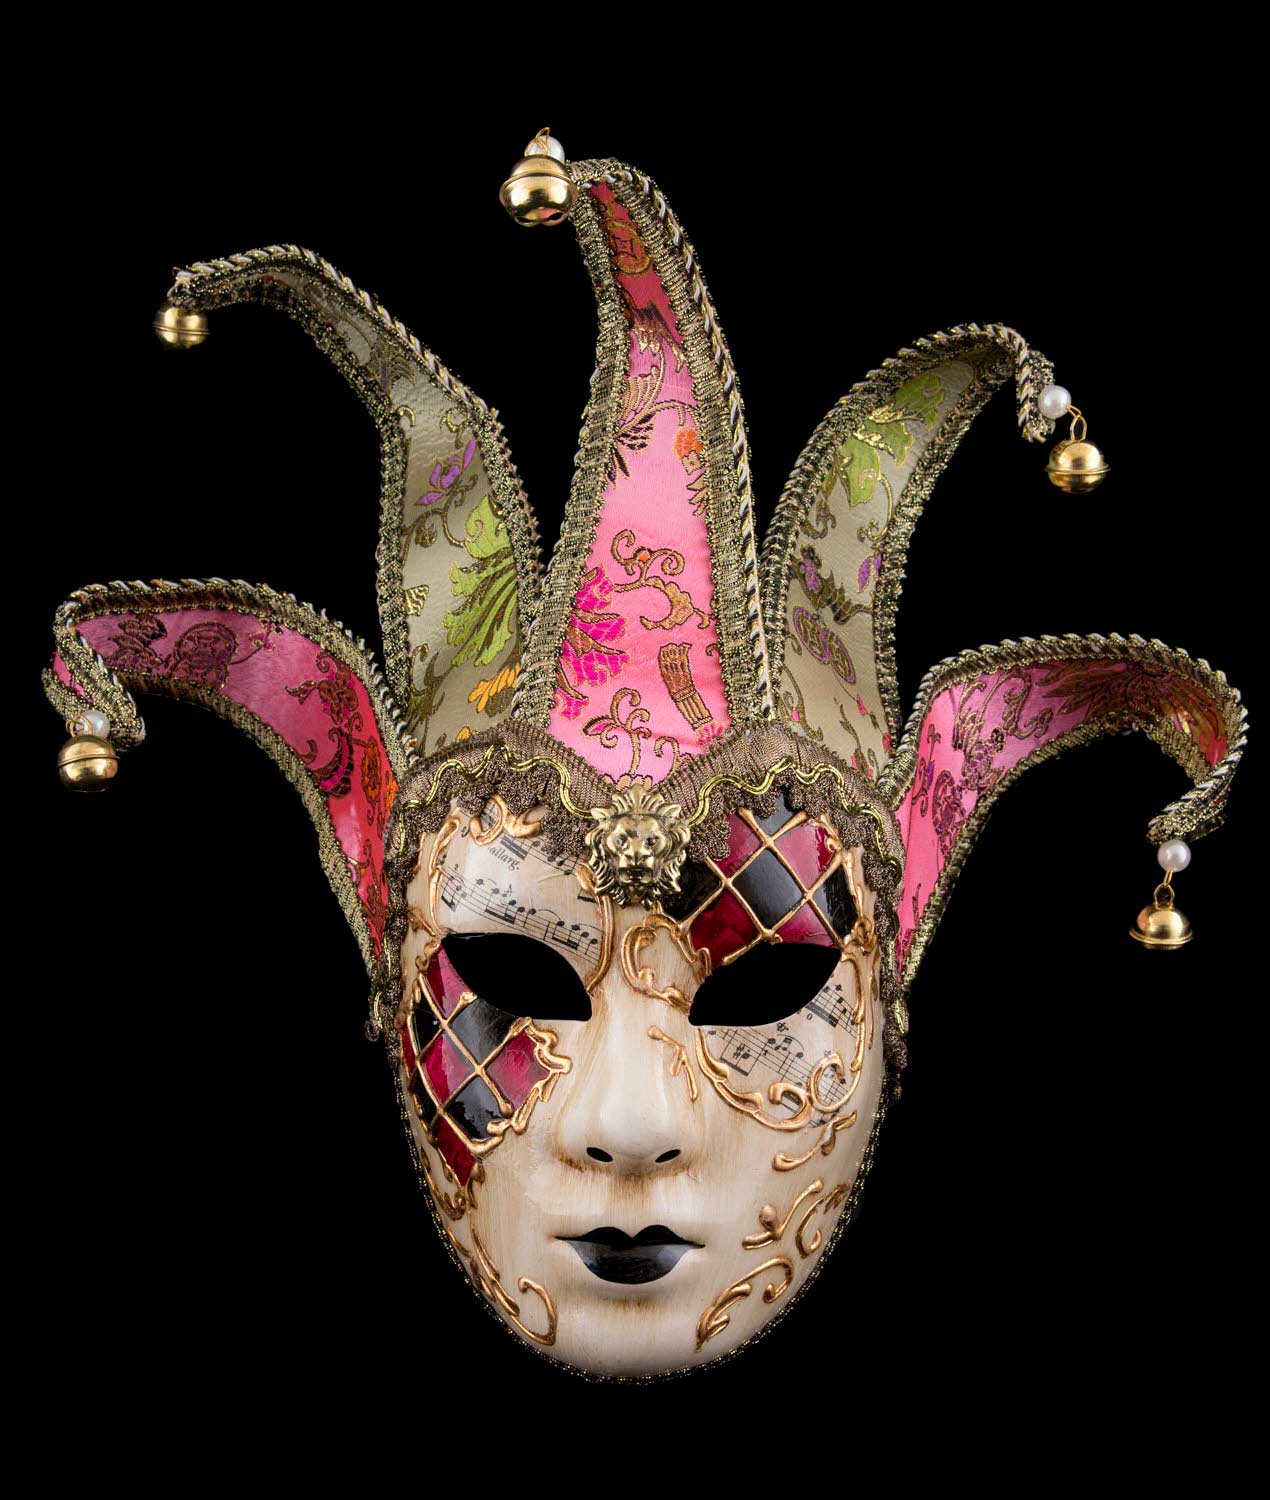 Vénitiens Masque opéras Masque Bal Masqué Carnaval Masque Mardi Gras des masques